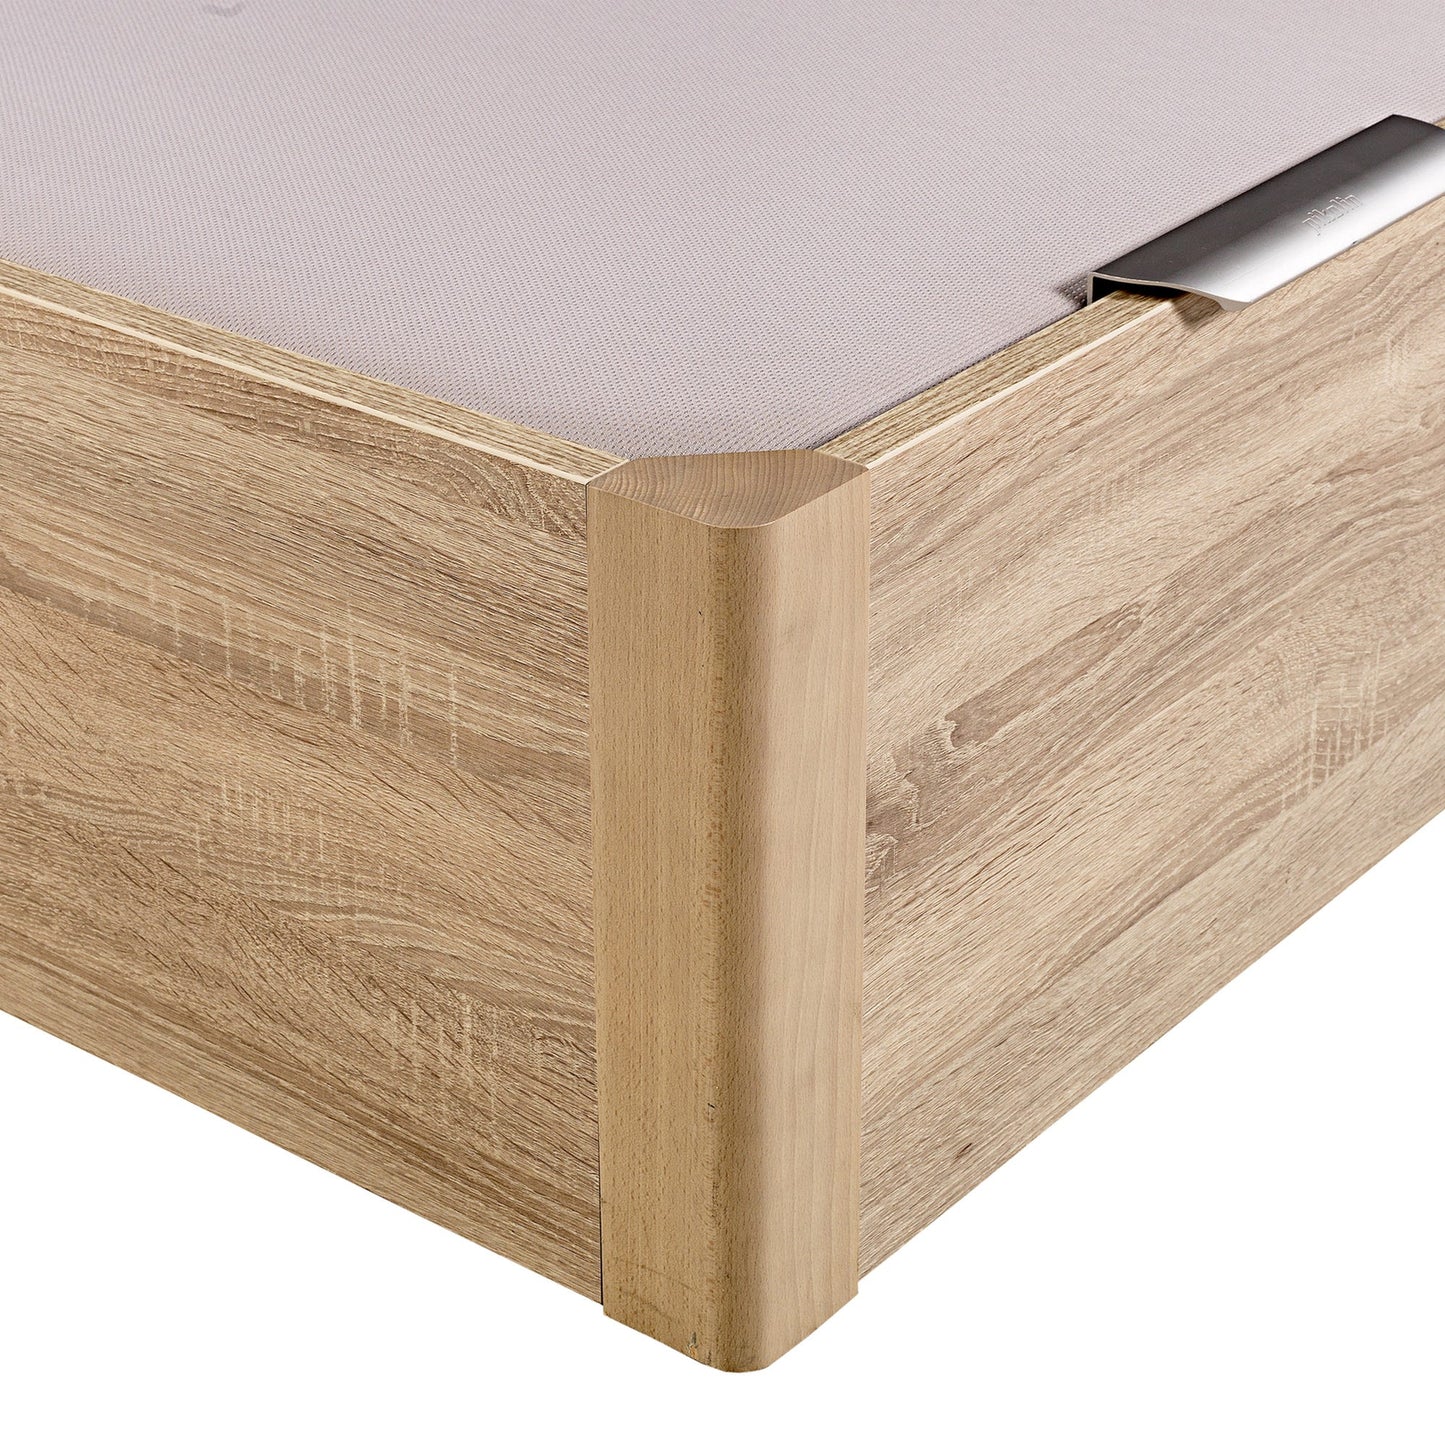 Canapé abatible de madera de alta capacidad tapa doble de color natural - DESIGN - 160x210